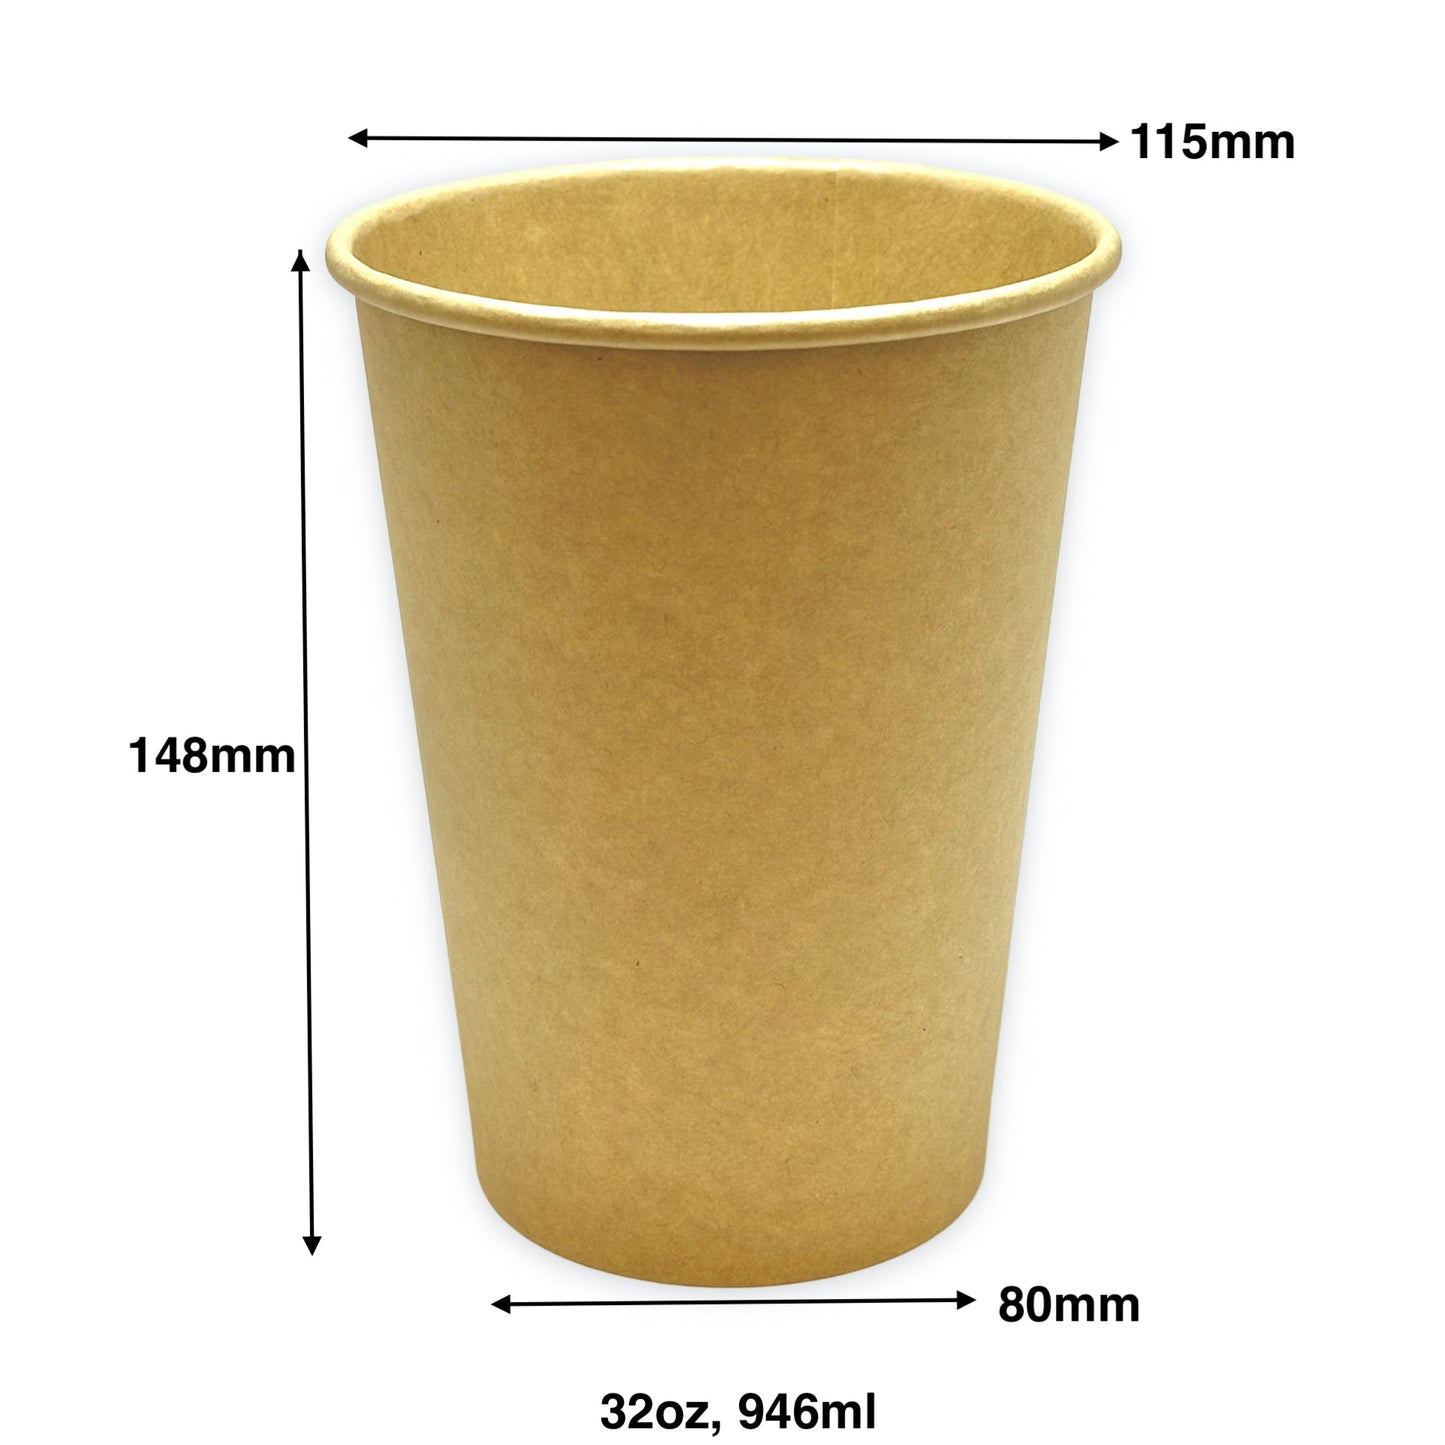 KIS-SC32 | 32oz, 946ml Kraft Paper Soup Cup Base; From $0.208/pc